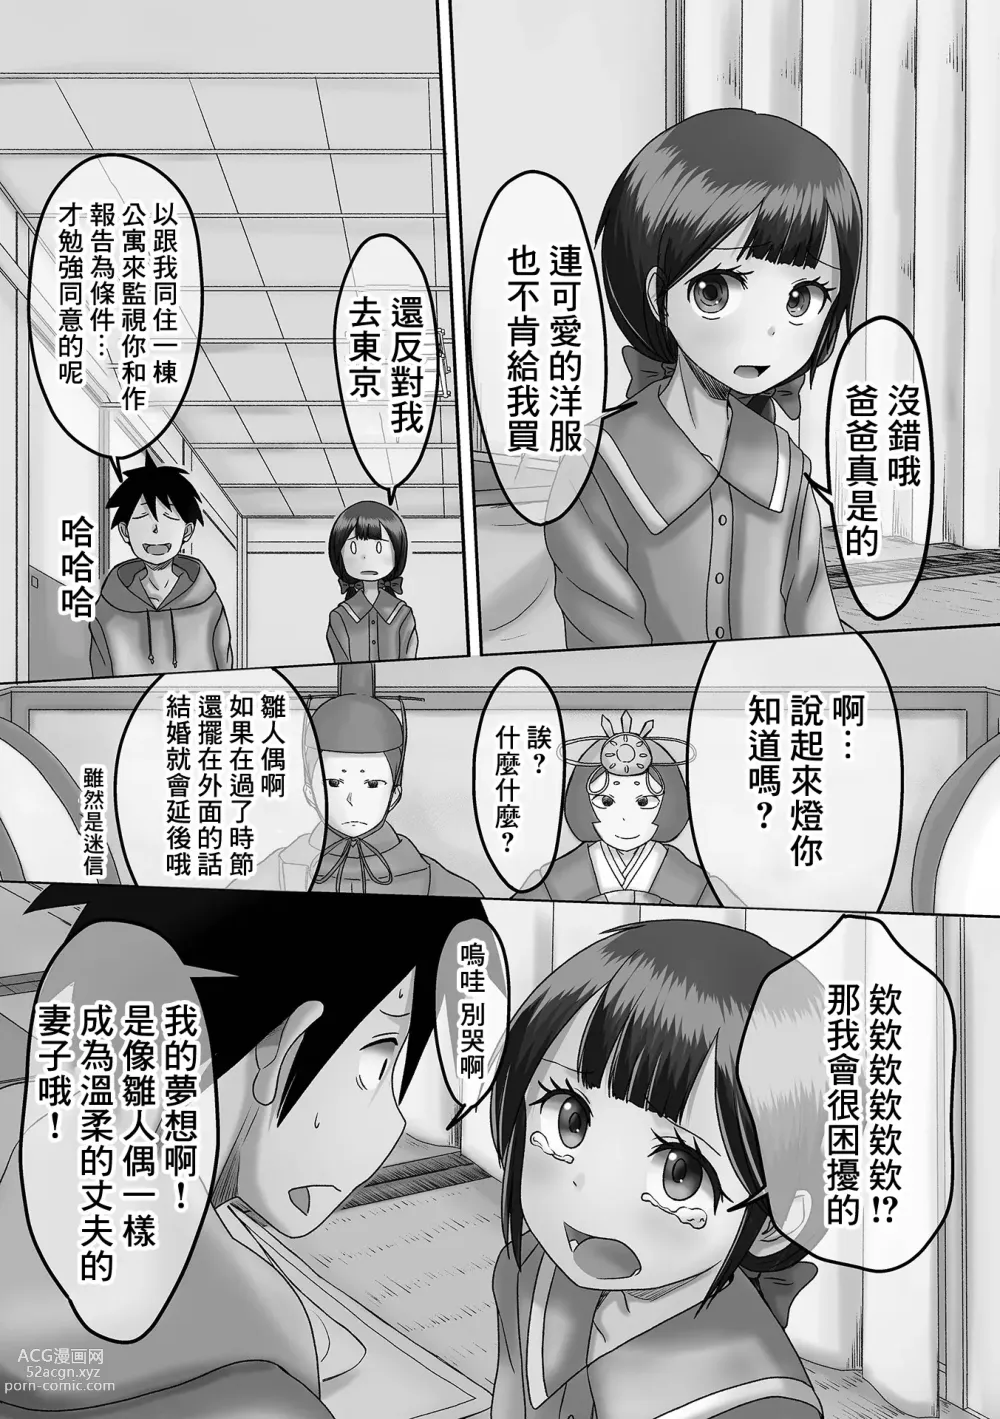 Page 3 of manga Akari o Tsukemasho Bonbori ni